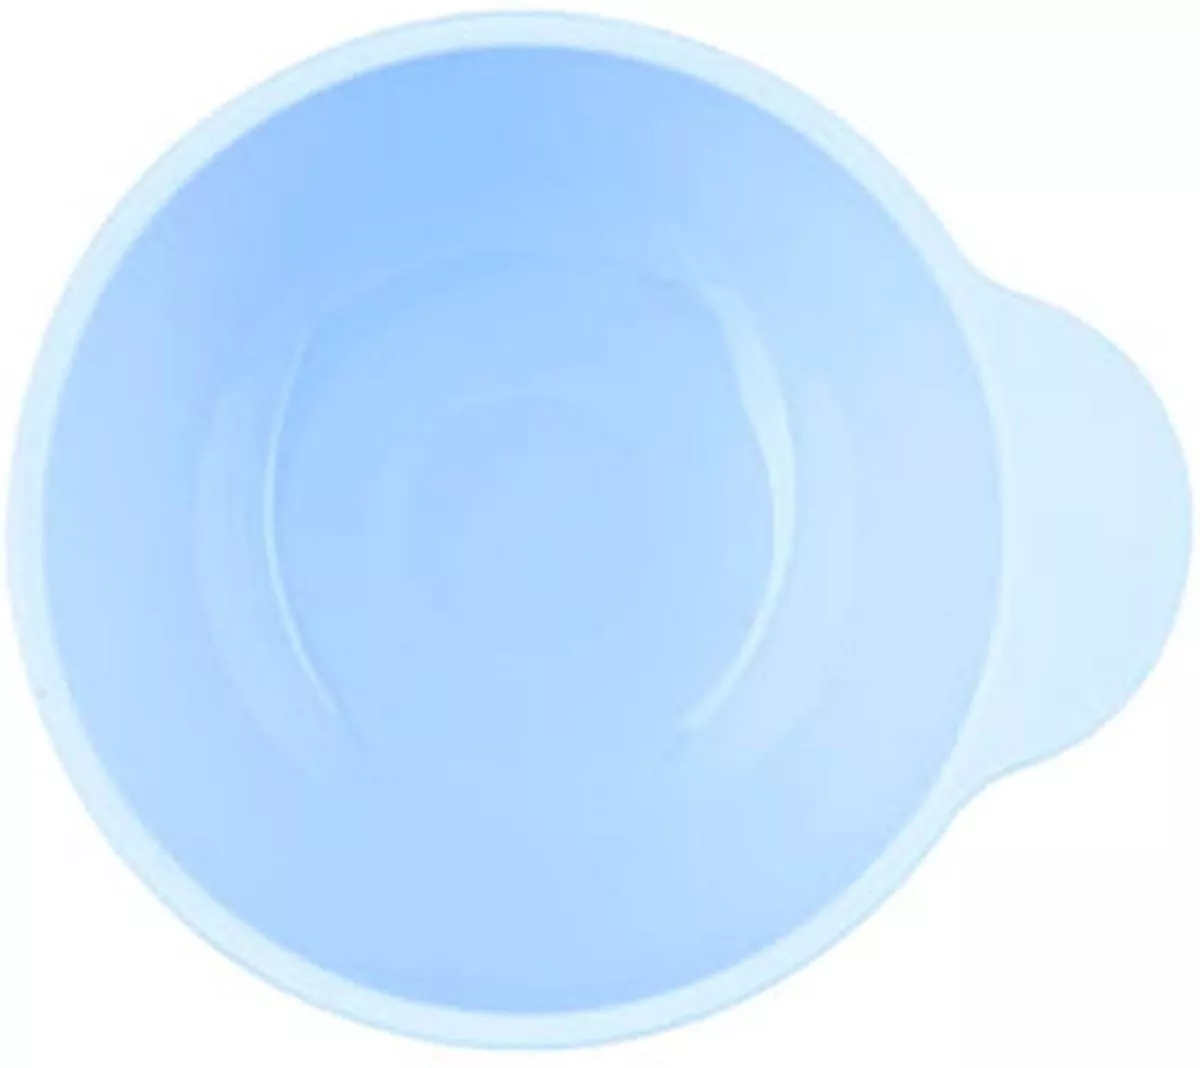 Primera imagen para búsqueda de plato silicona bebe con ventosa